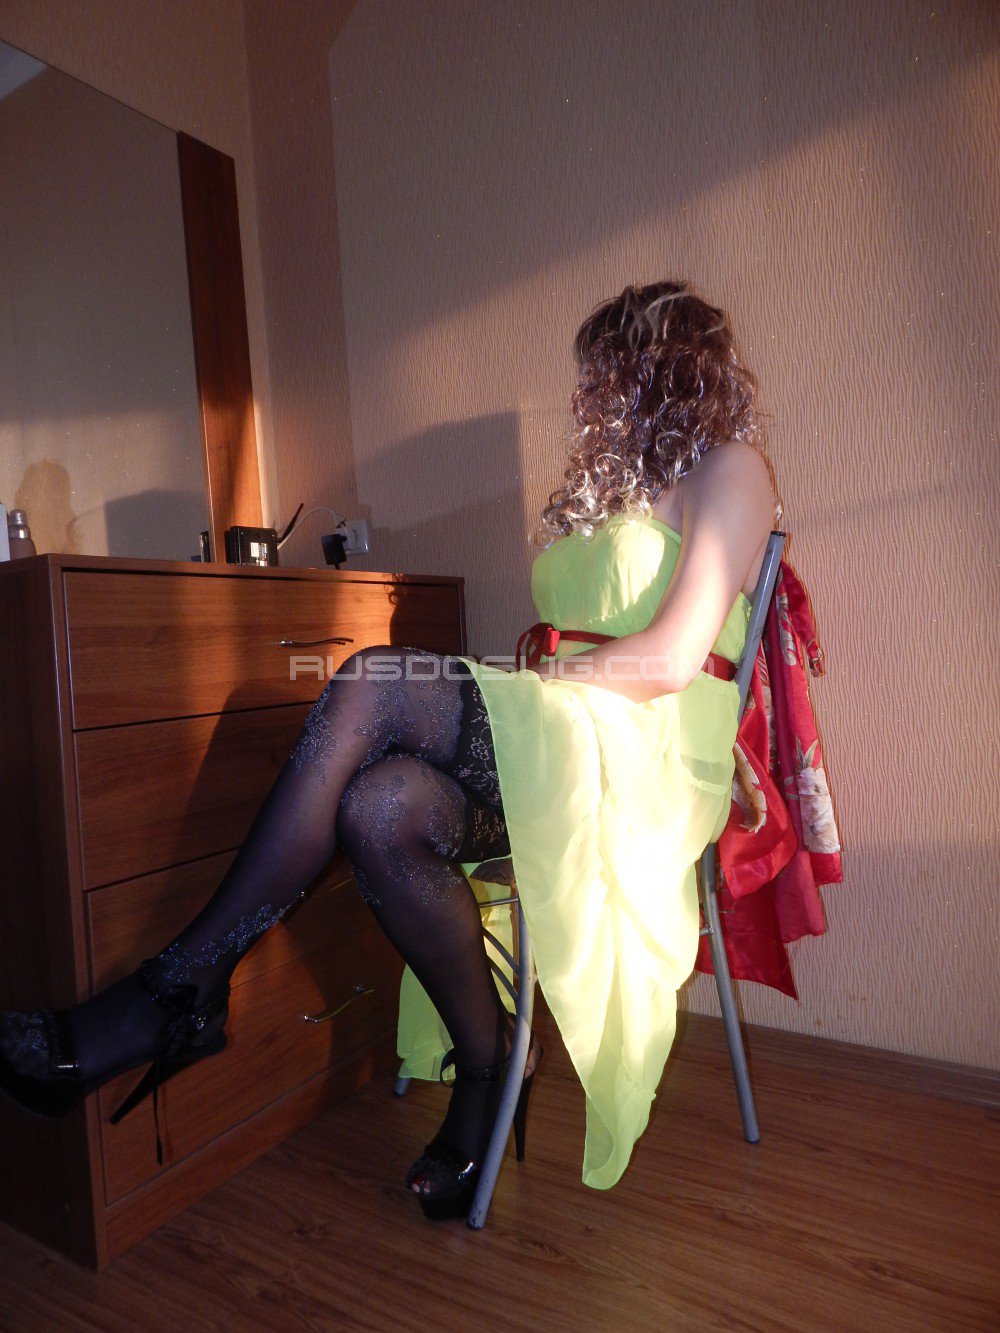 Проститутка Анжела возрастом 49 с ростом 168 см для интима в Москве